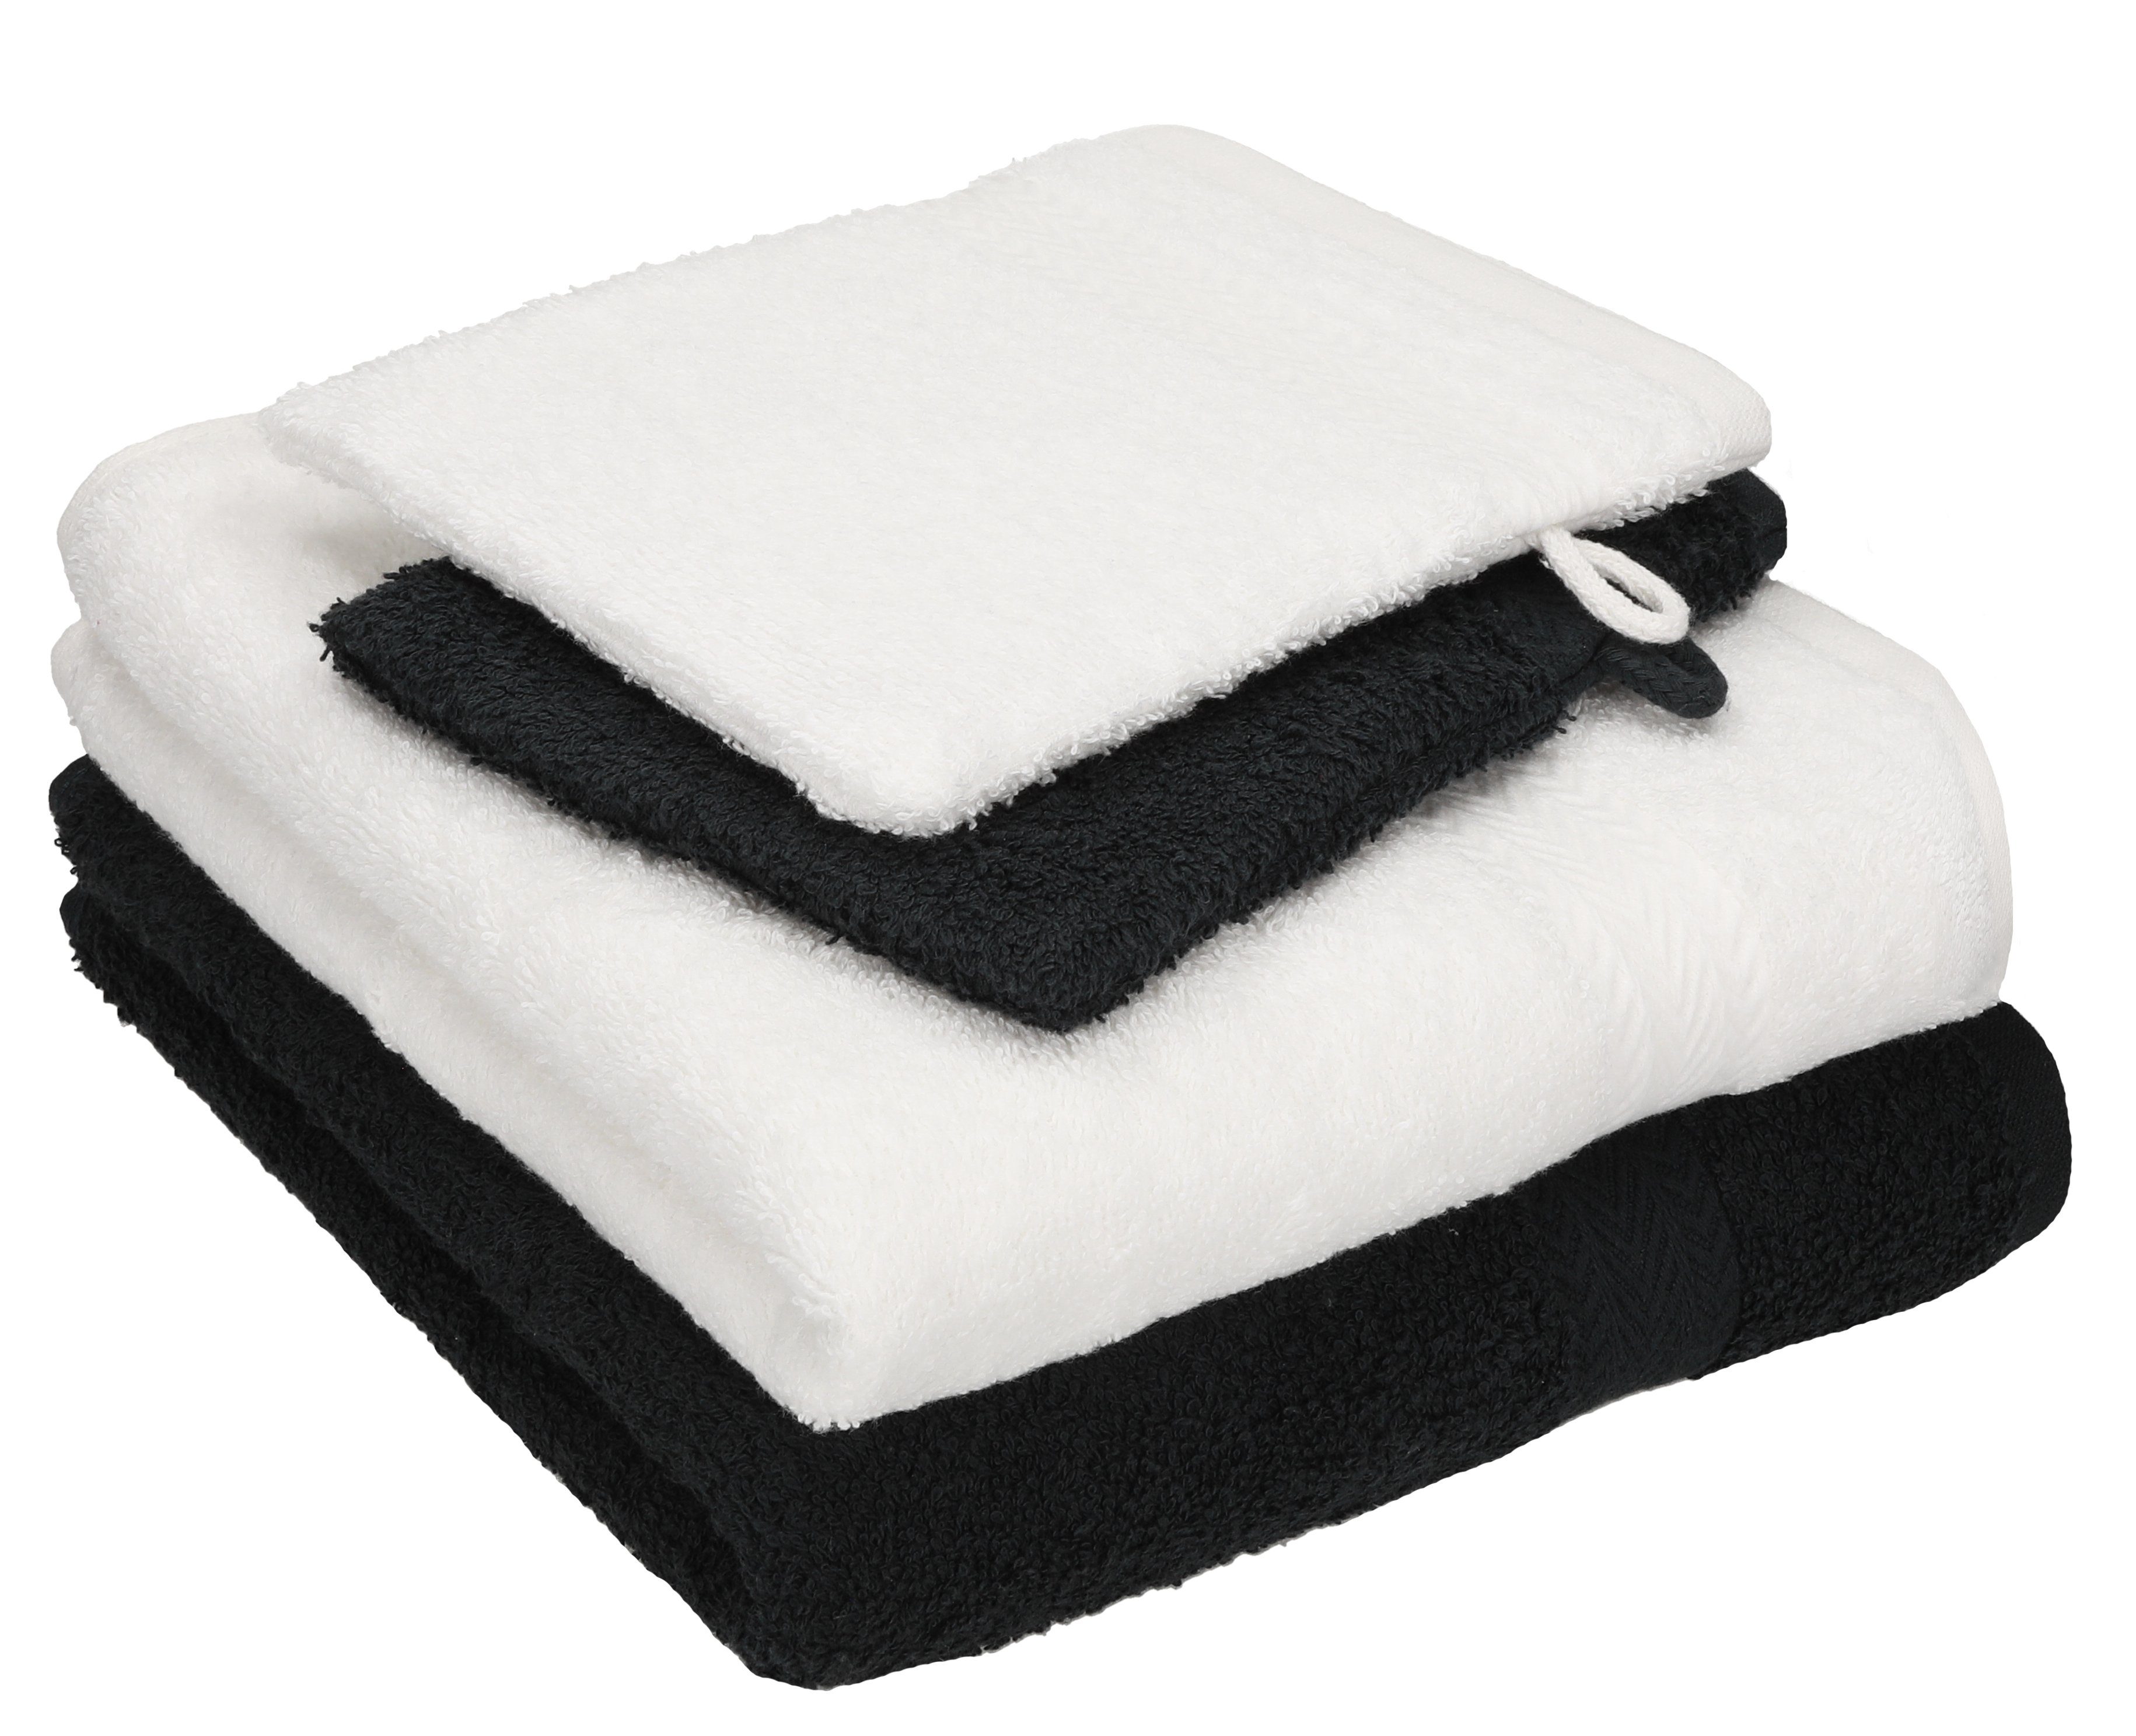 Betz Handtuch Set 4 TLG. Handtuch Set Happy Pack 100% Baumwolle 2 Handtücher 2 Waschhandschuhe, 100% Baumwolle, (4-tlg) weiß-schwarz | Handtuch-Sets